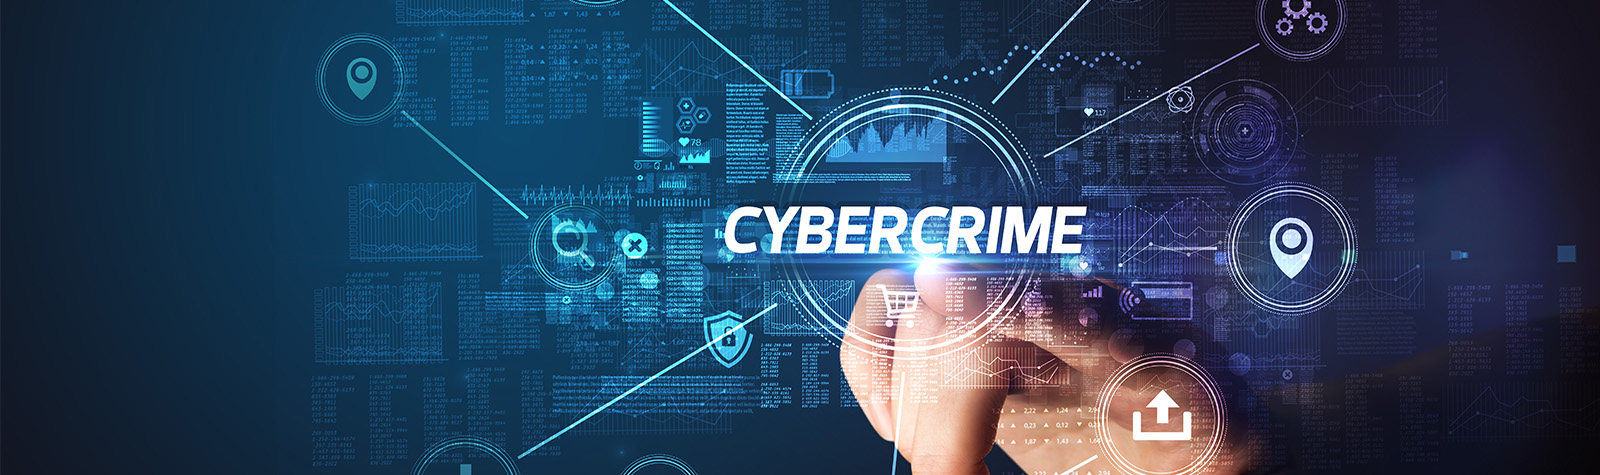 5 cybercrime trends om in de gaten te houden